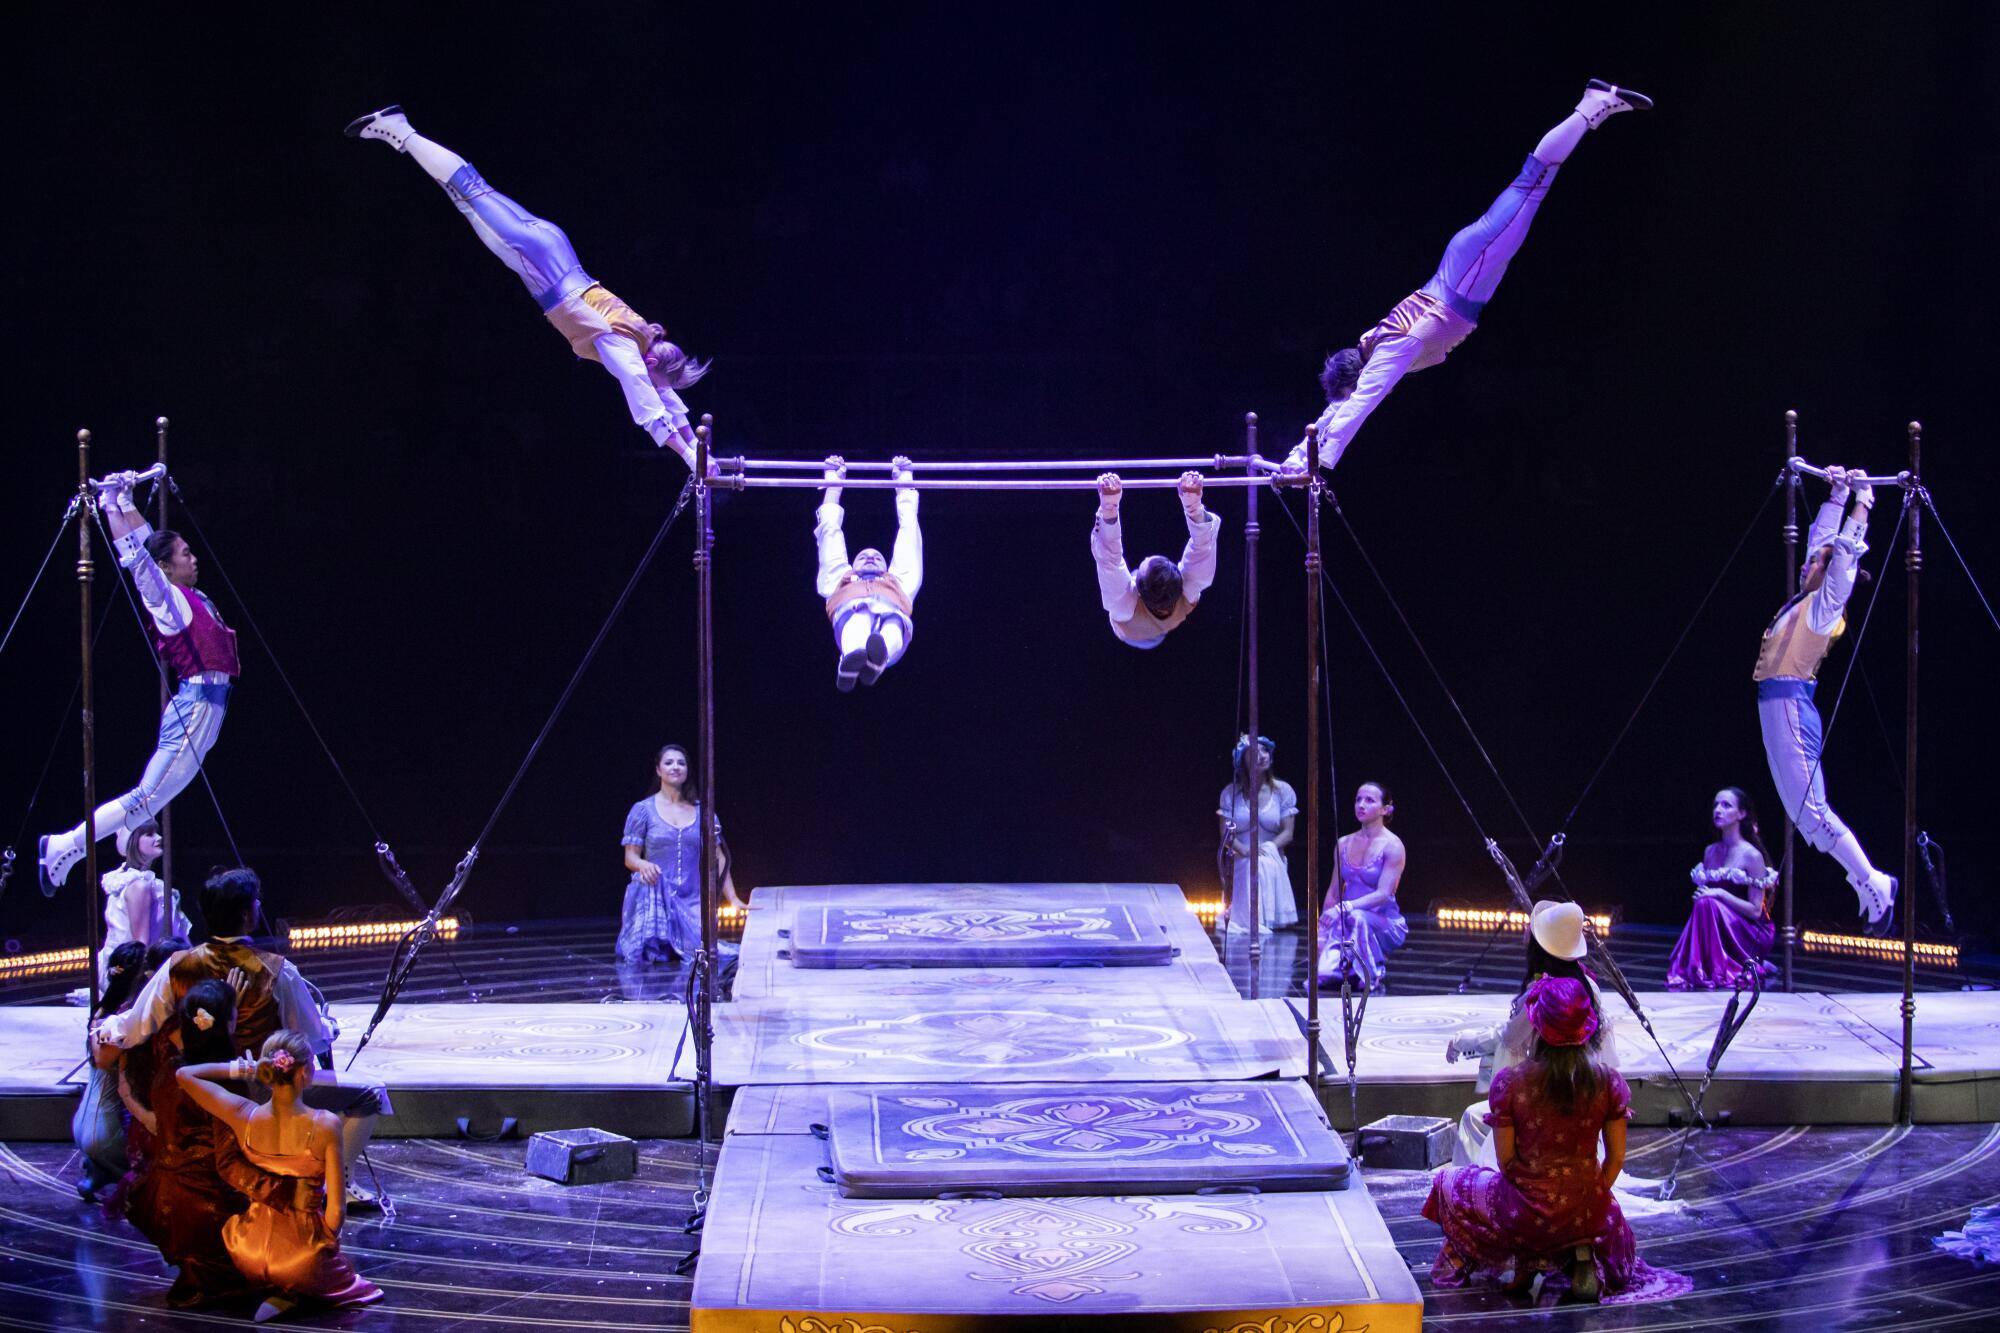 Una de las muchas escenas de acrobacias en el montaje Corteo del Cirque du Soleil.